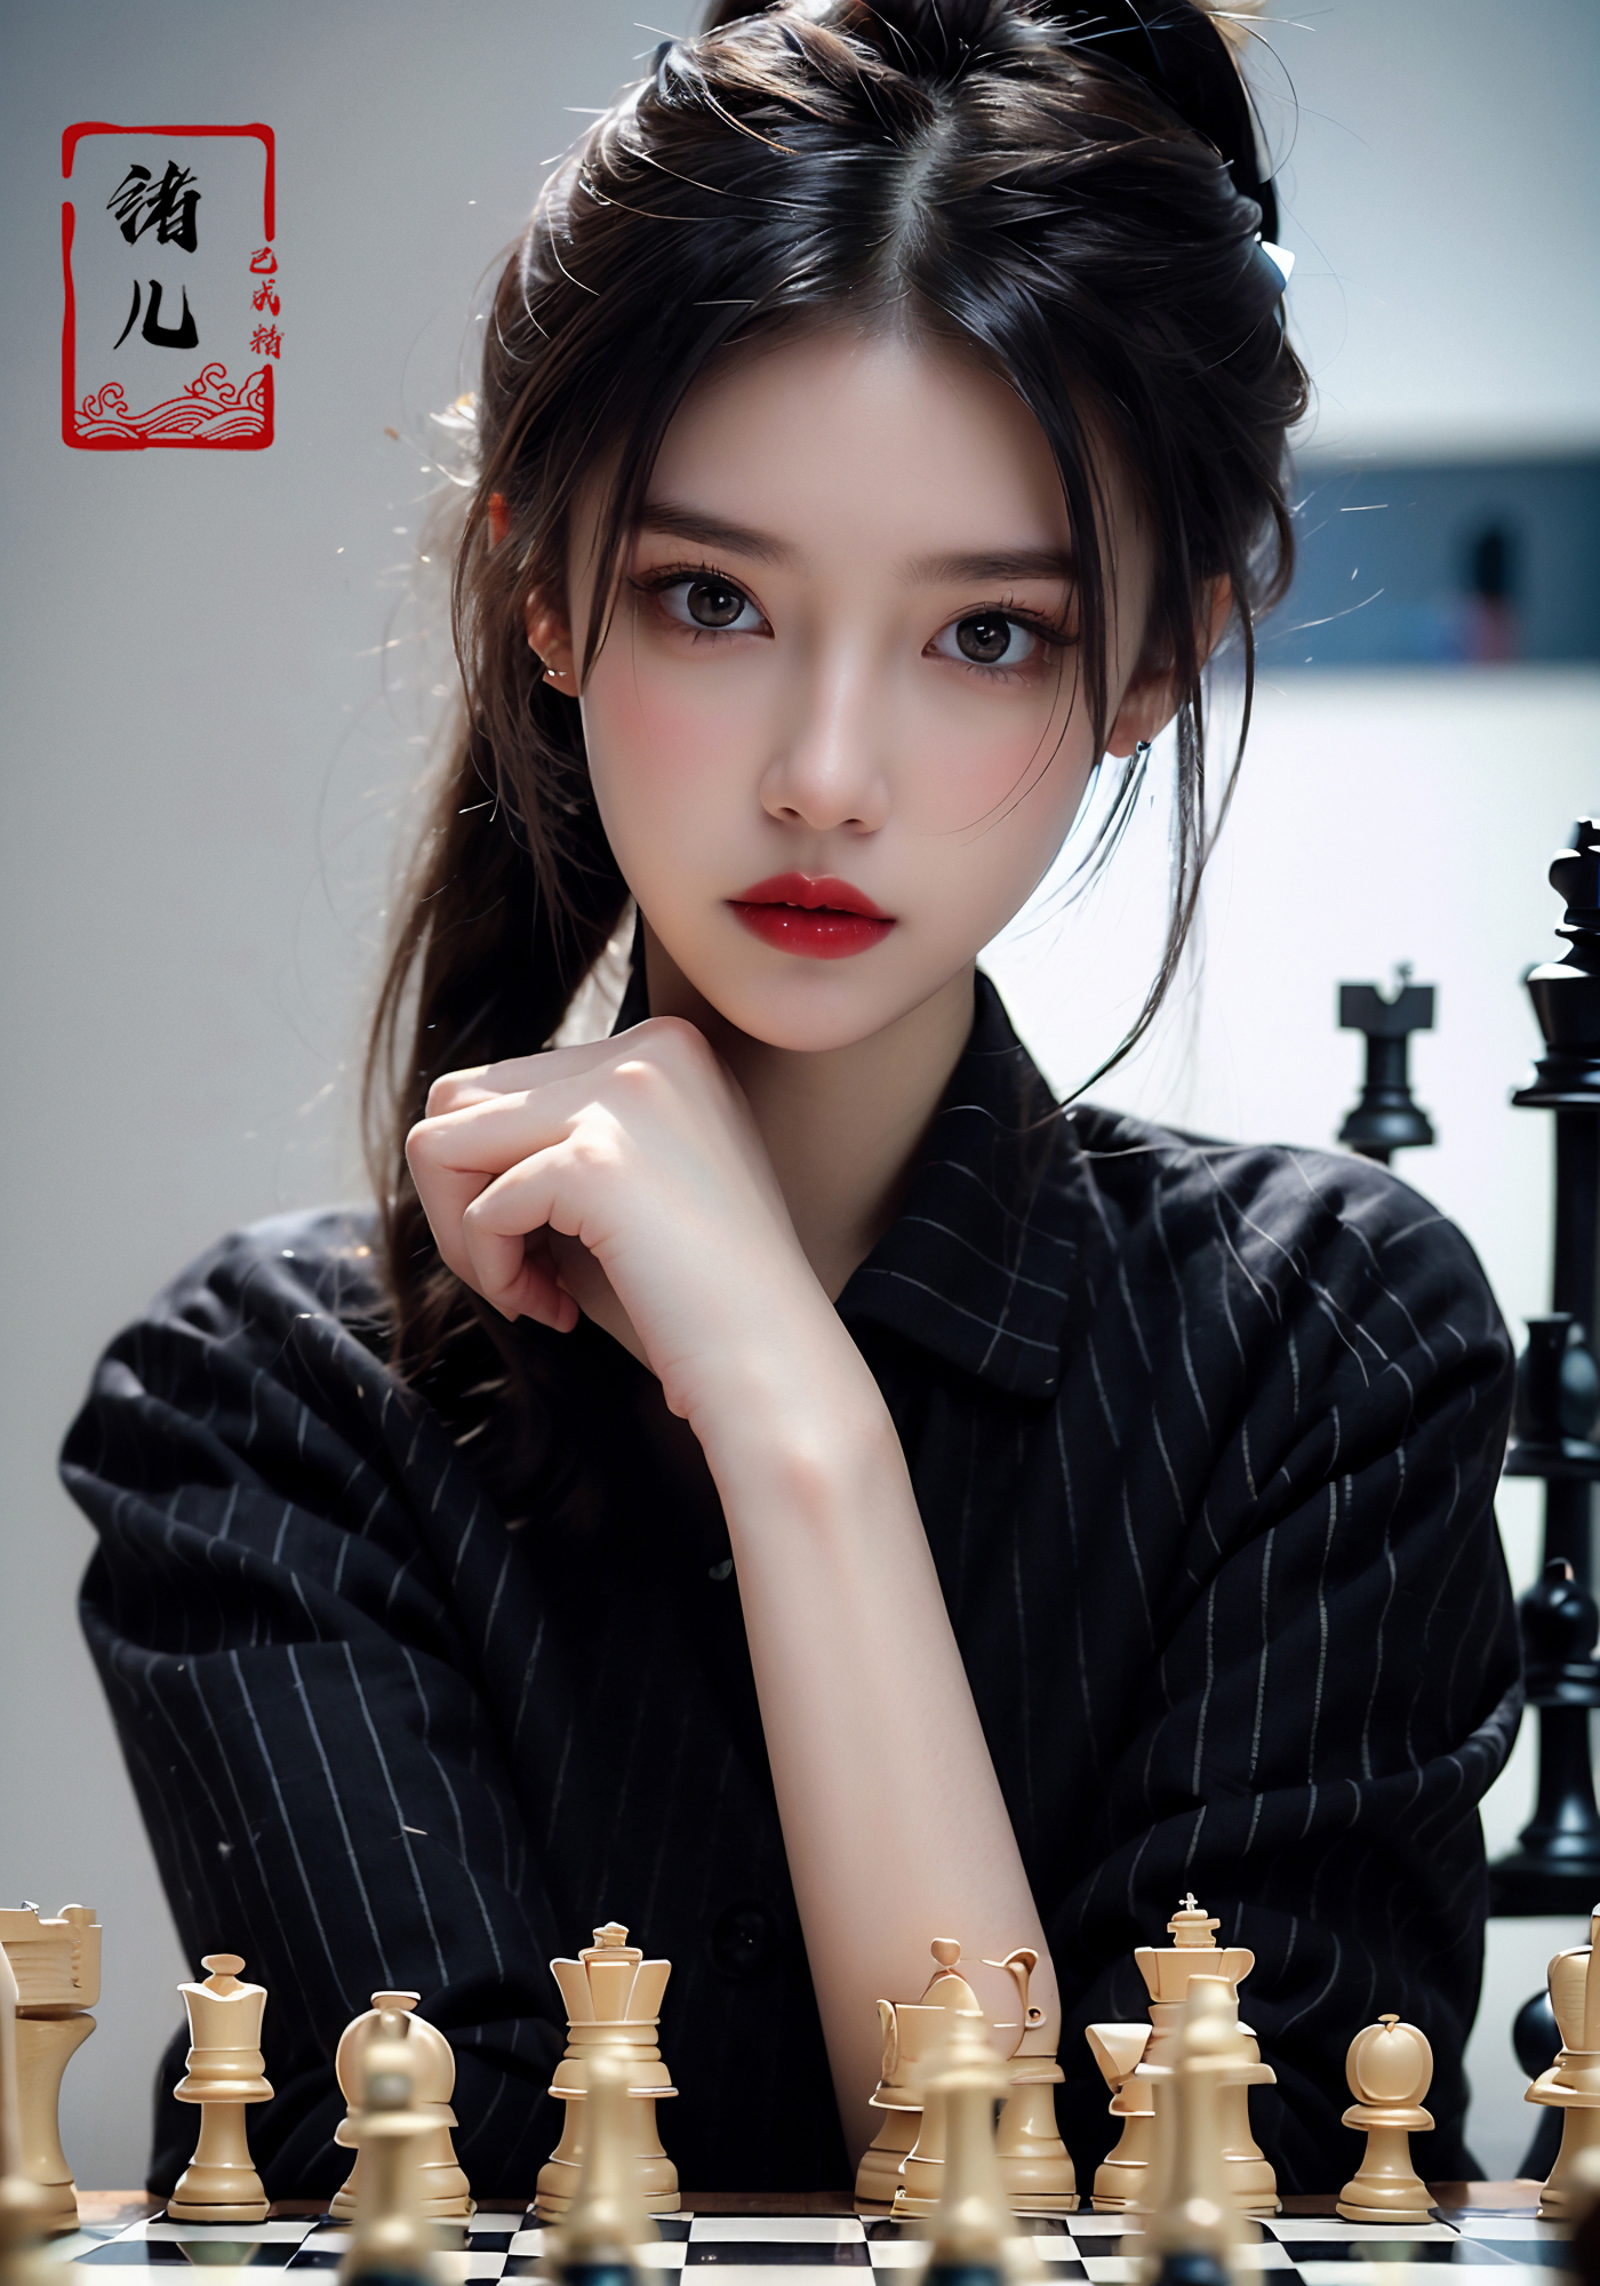 绪儿-国际象棋御姐 chess【Face model】 image by XRYCJ